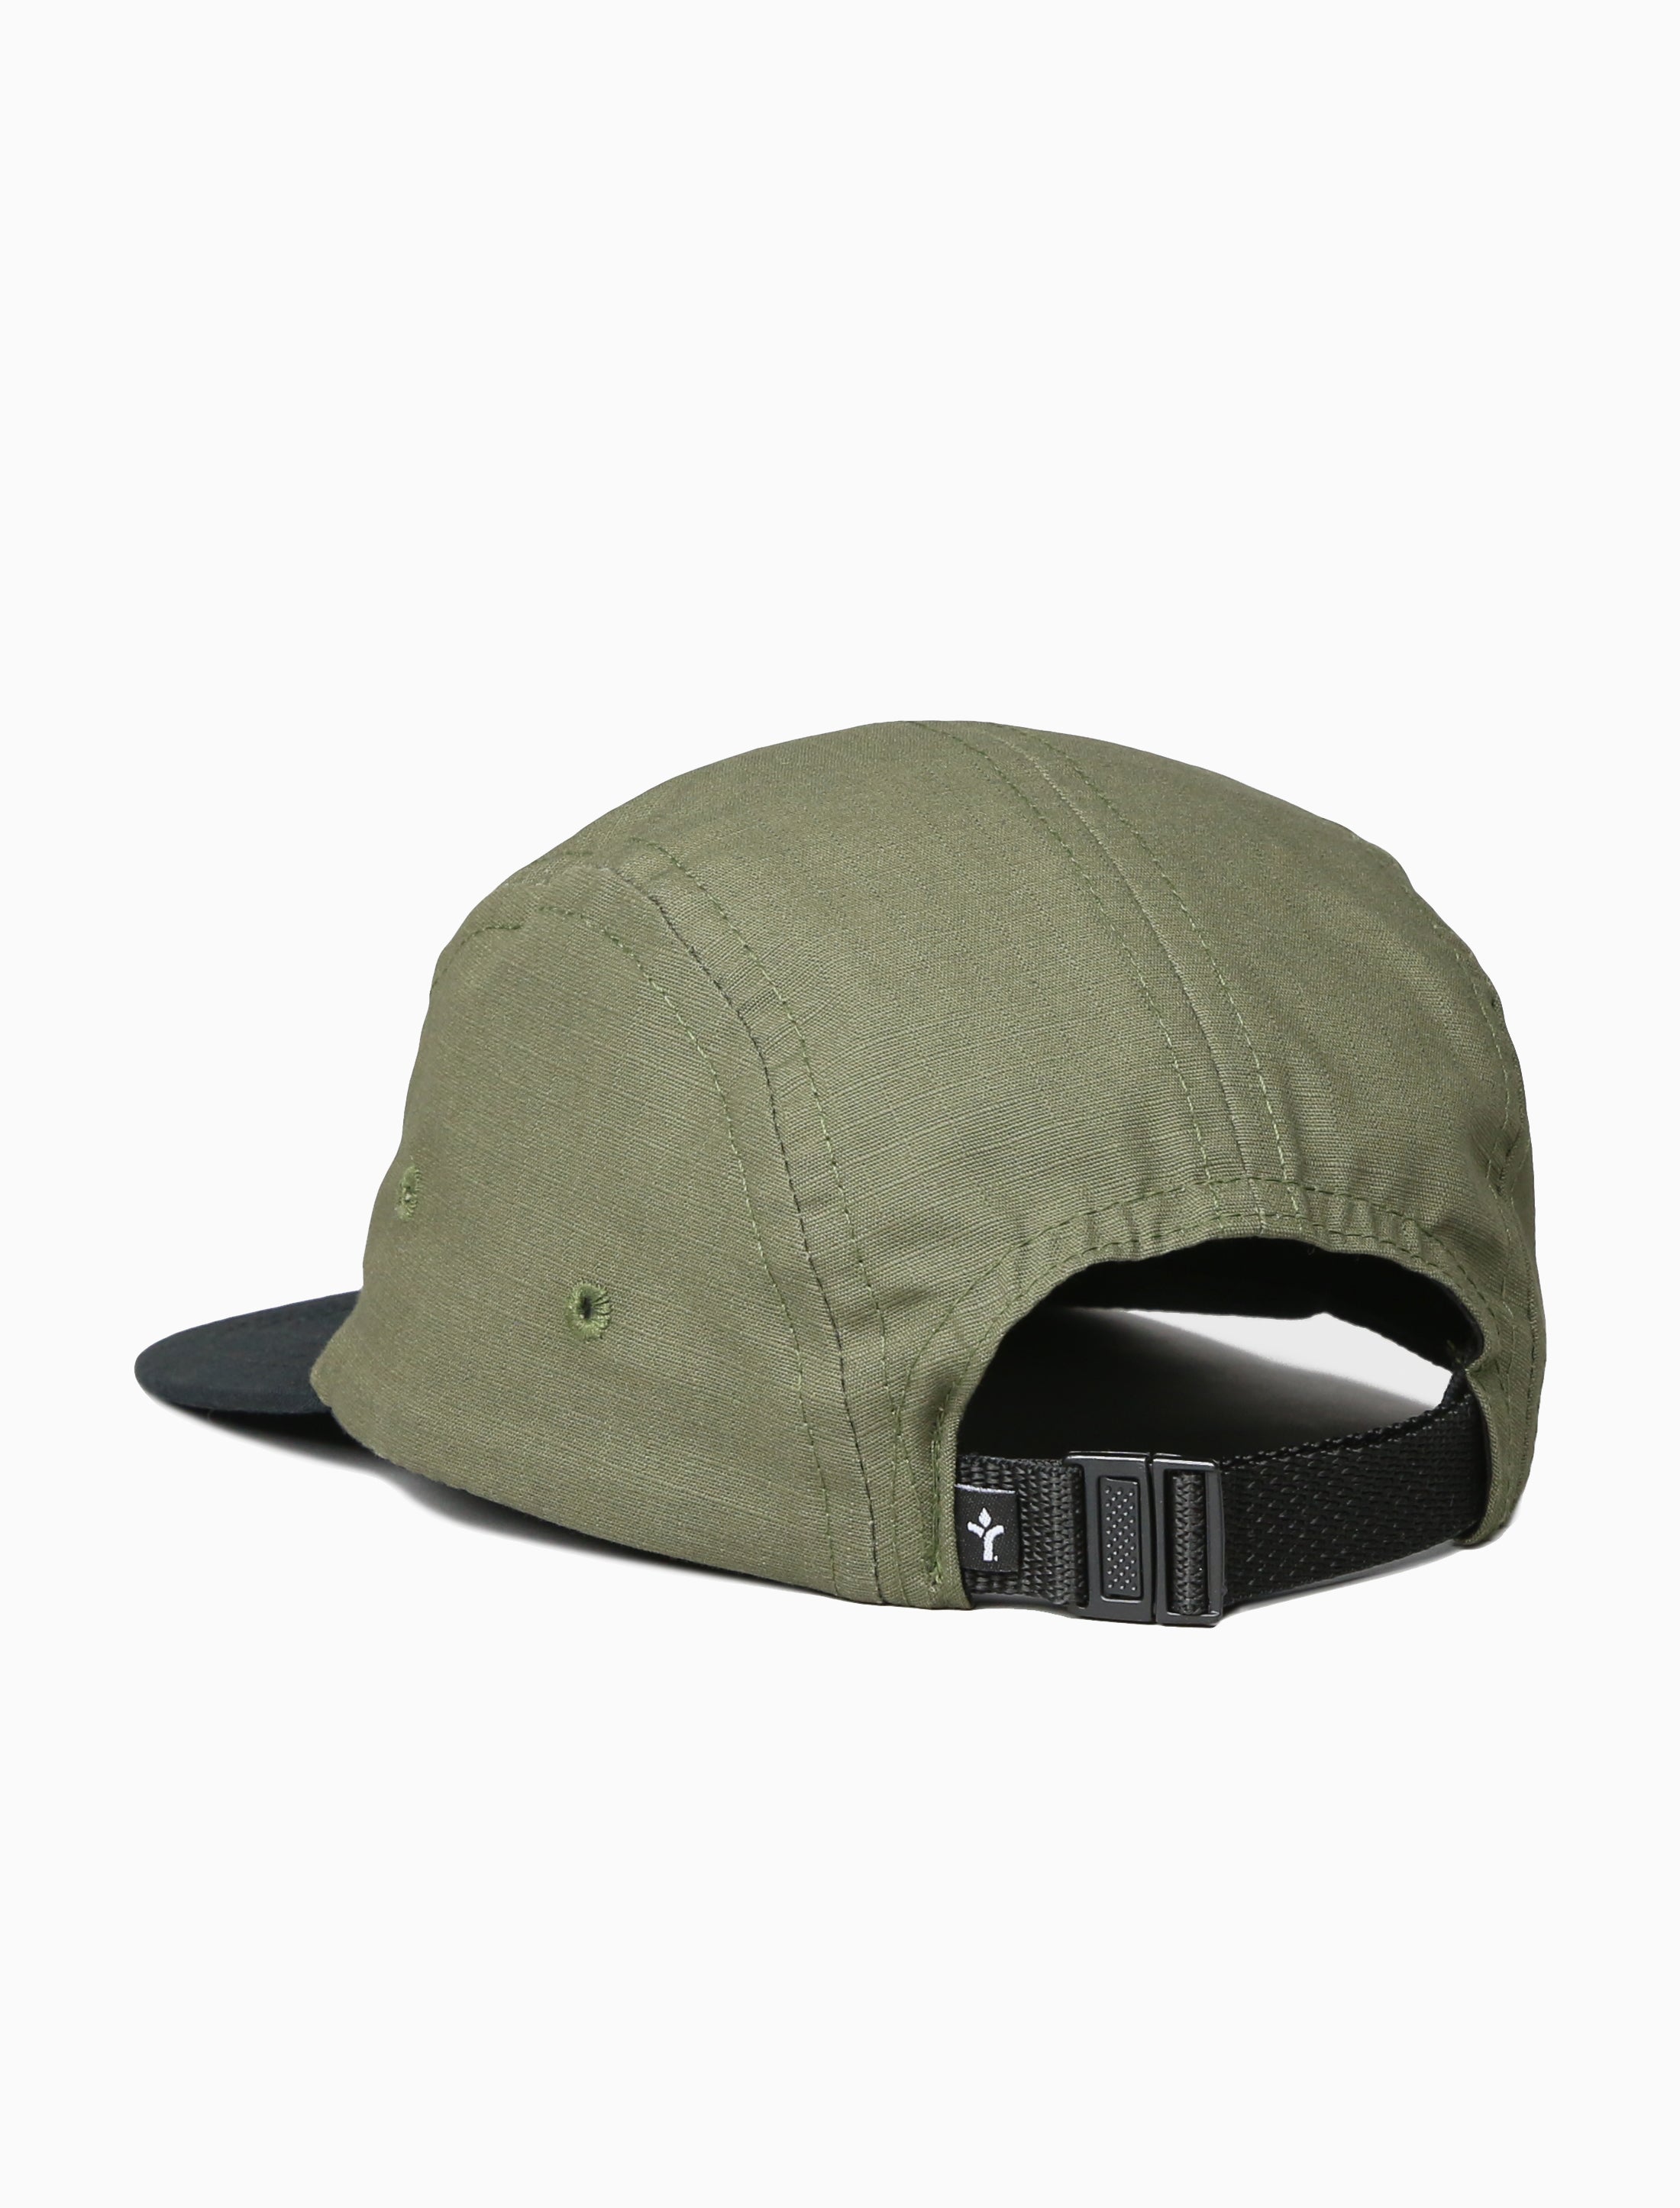 Ranger Camper Hat